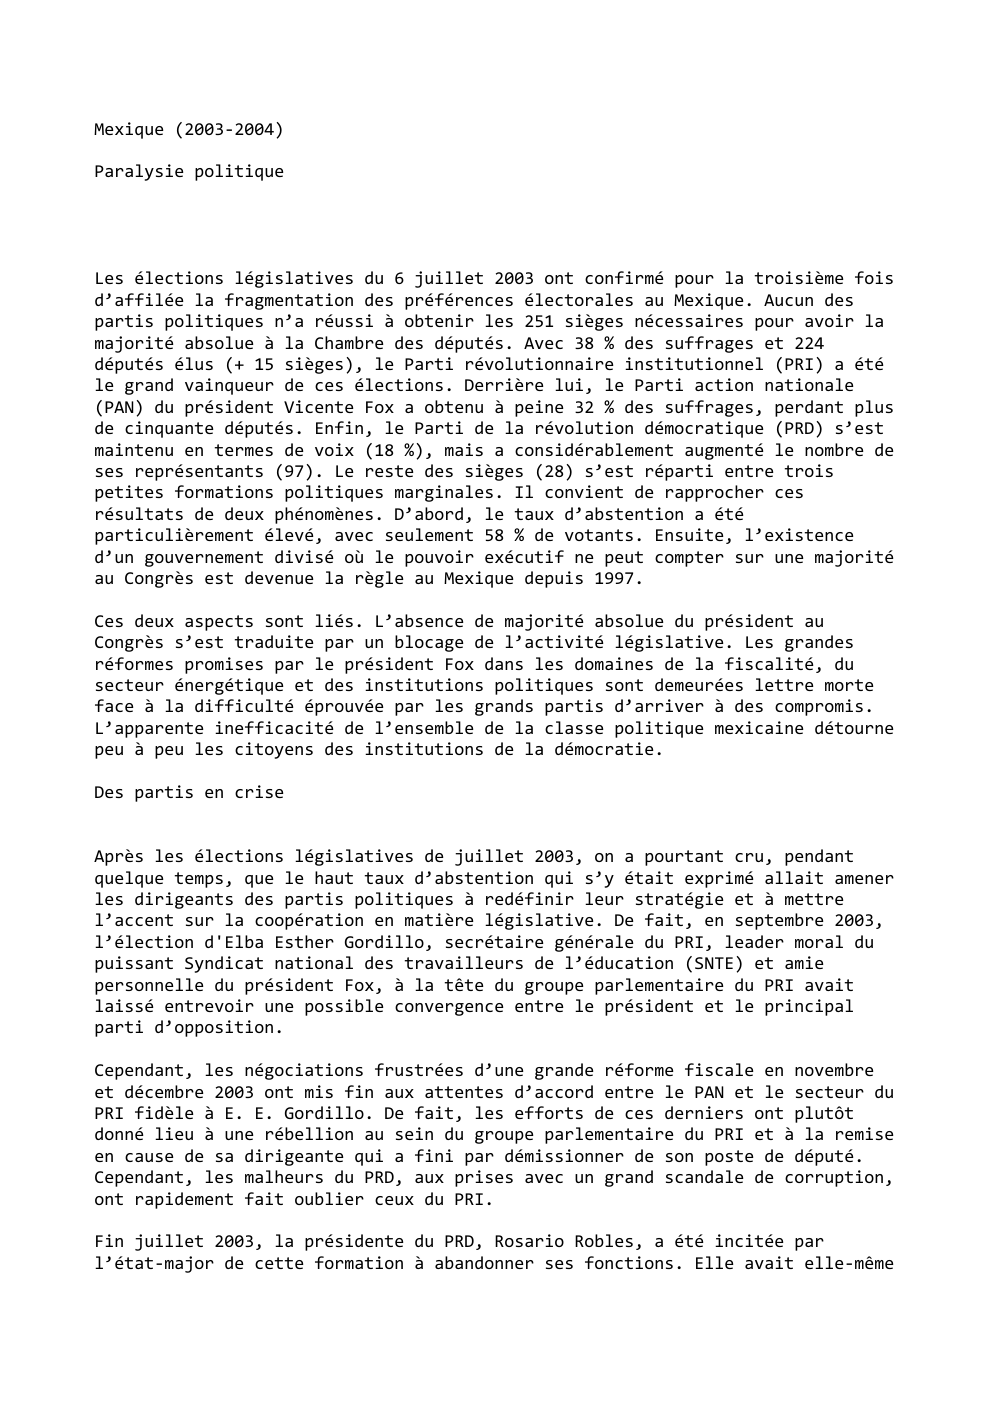 Prévisualisation du document Mexique (2003-2004)
Paralysie politique

Les élections législatives du 6 juillet 2003 ont confirmé pour la troisième fois
d’affilée la fragmentation...